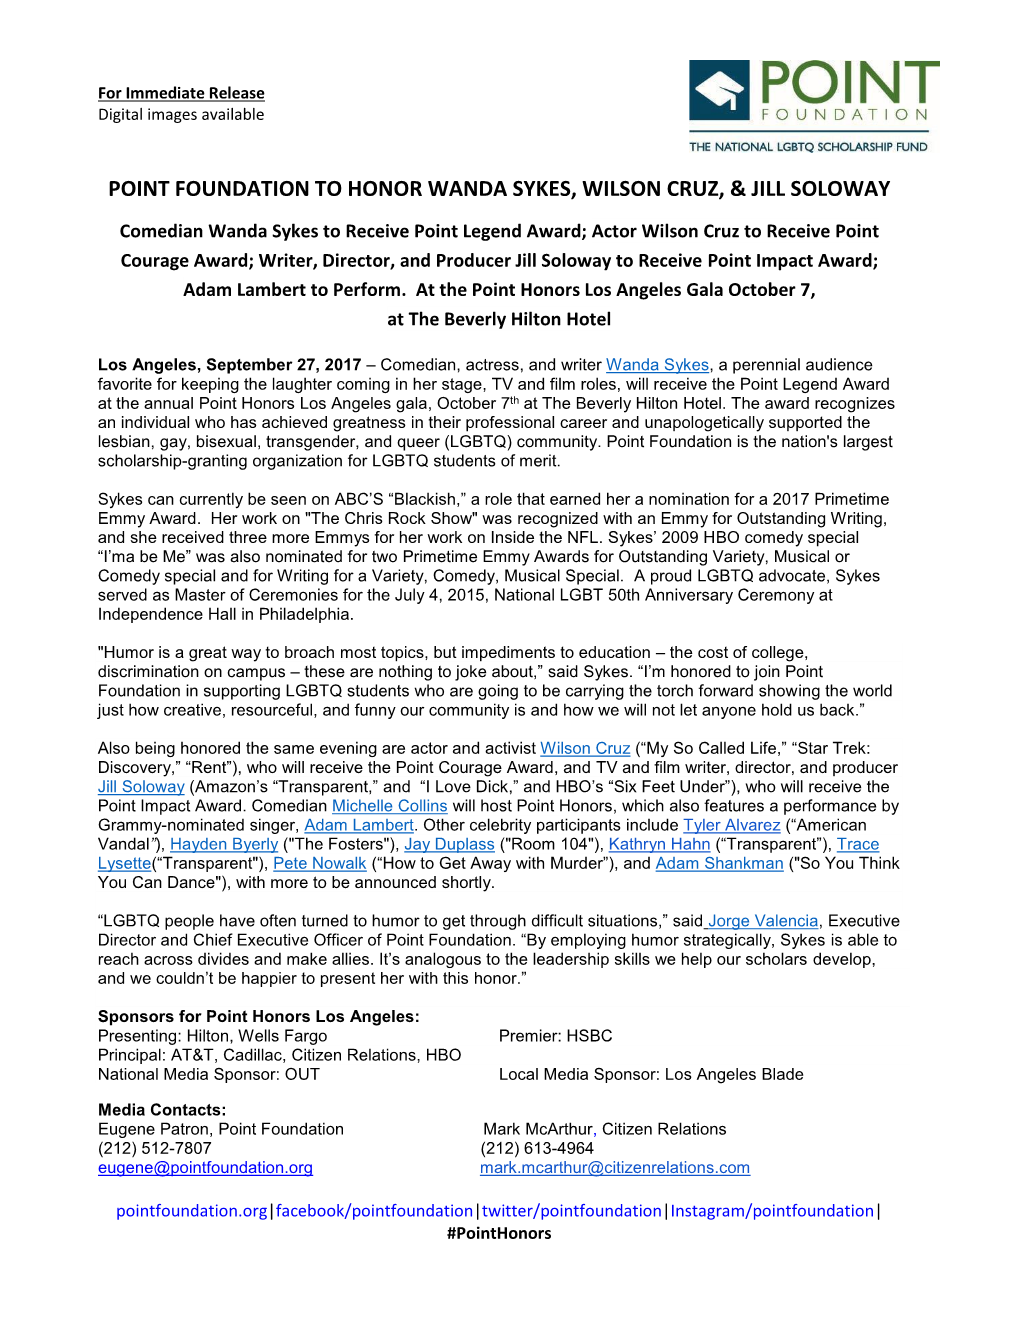 Point Foundation to Honor Wanda Sykes, Wilson Cruz, & Jill Soloway